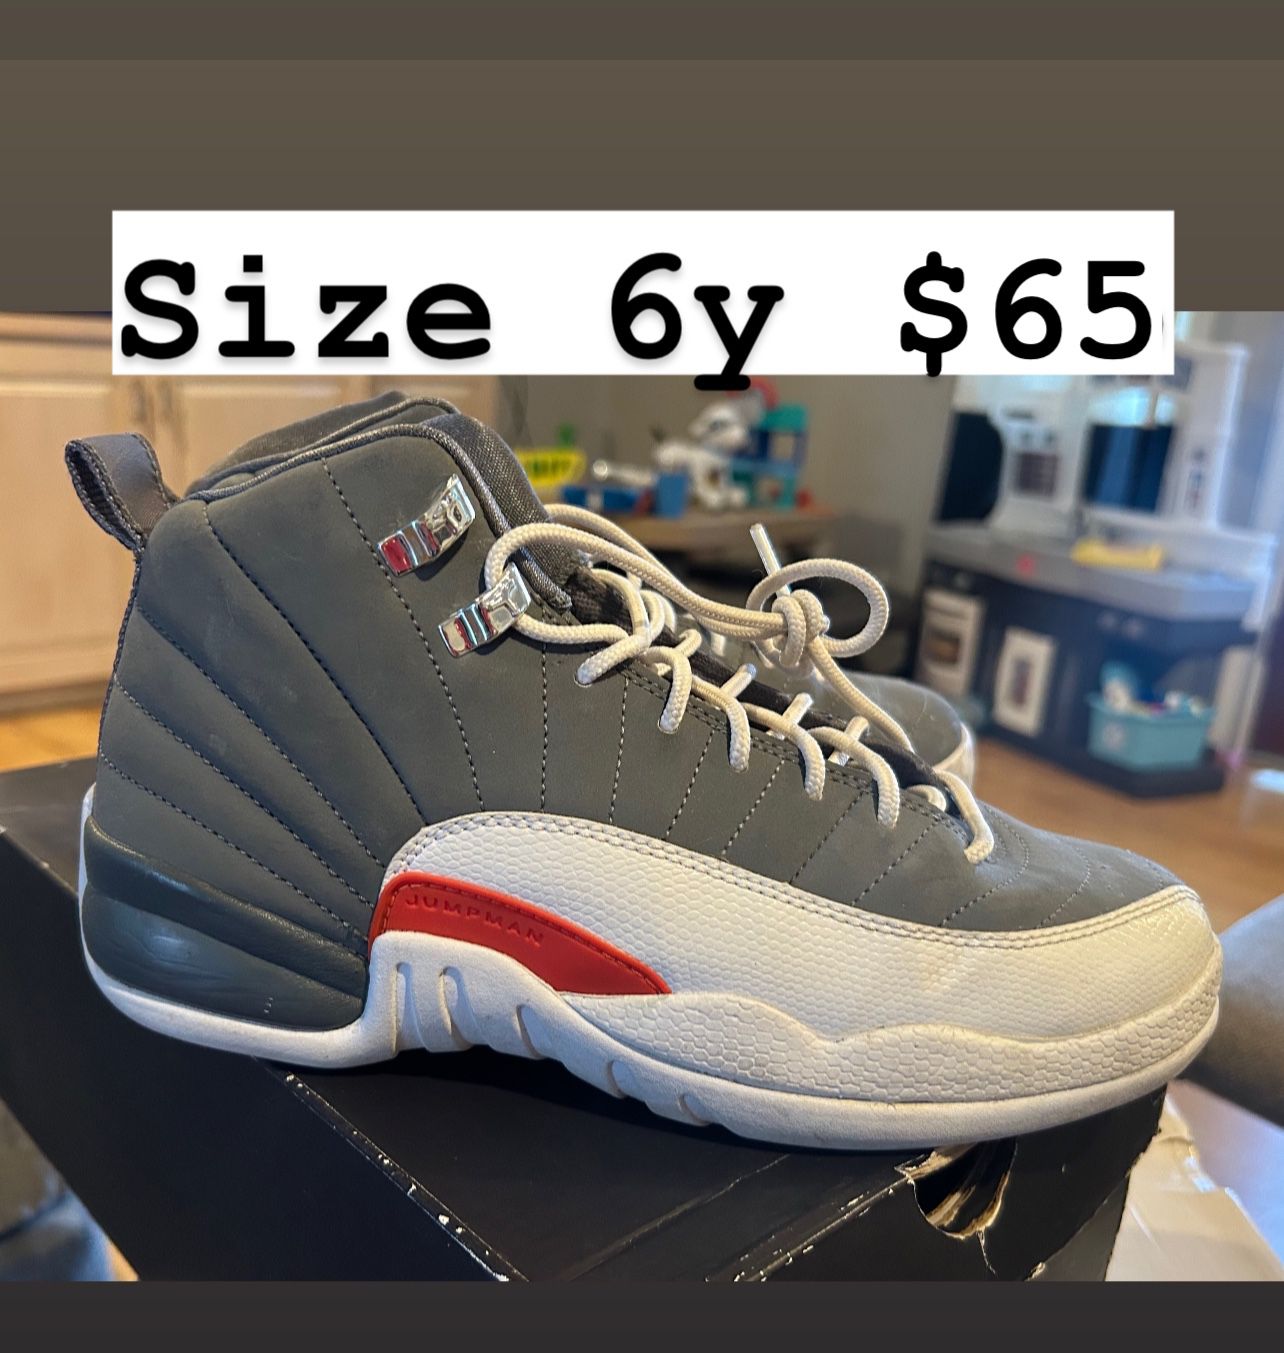 Jordan Retro 12s Cool Grey Size 6y